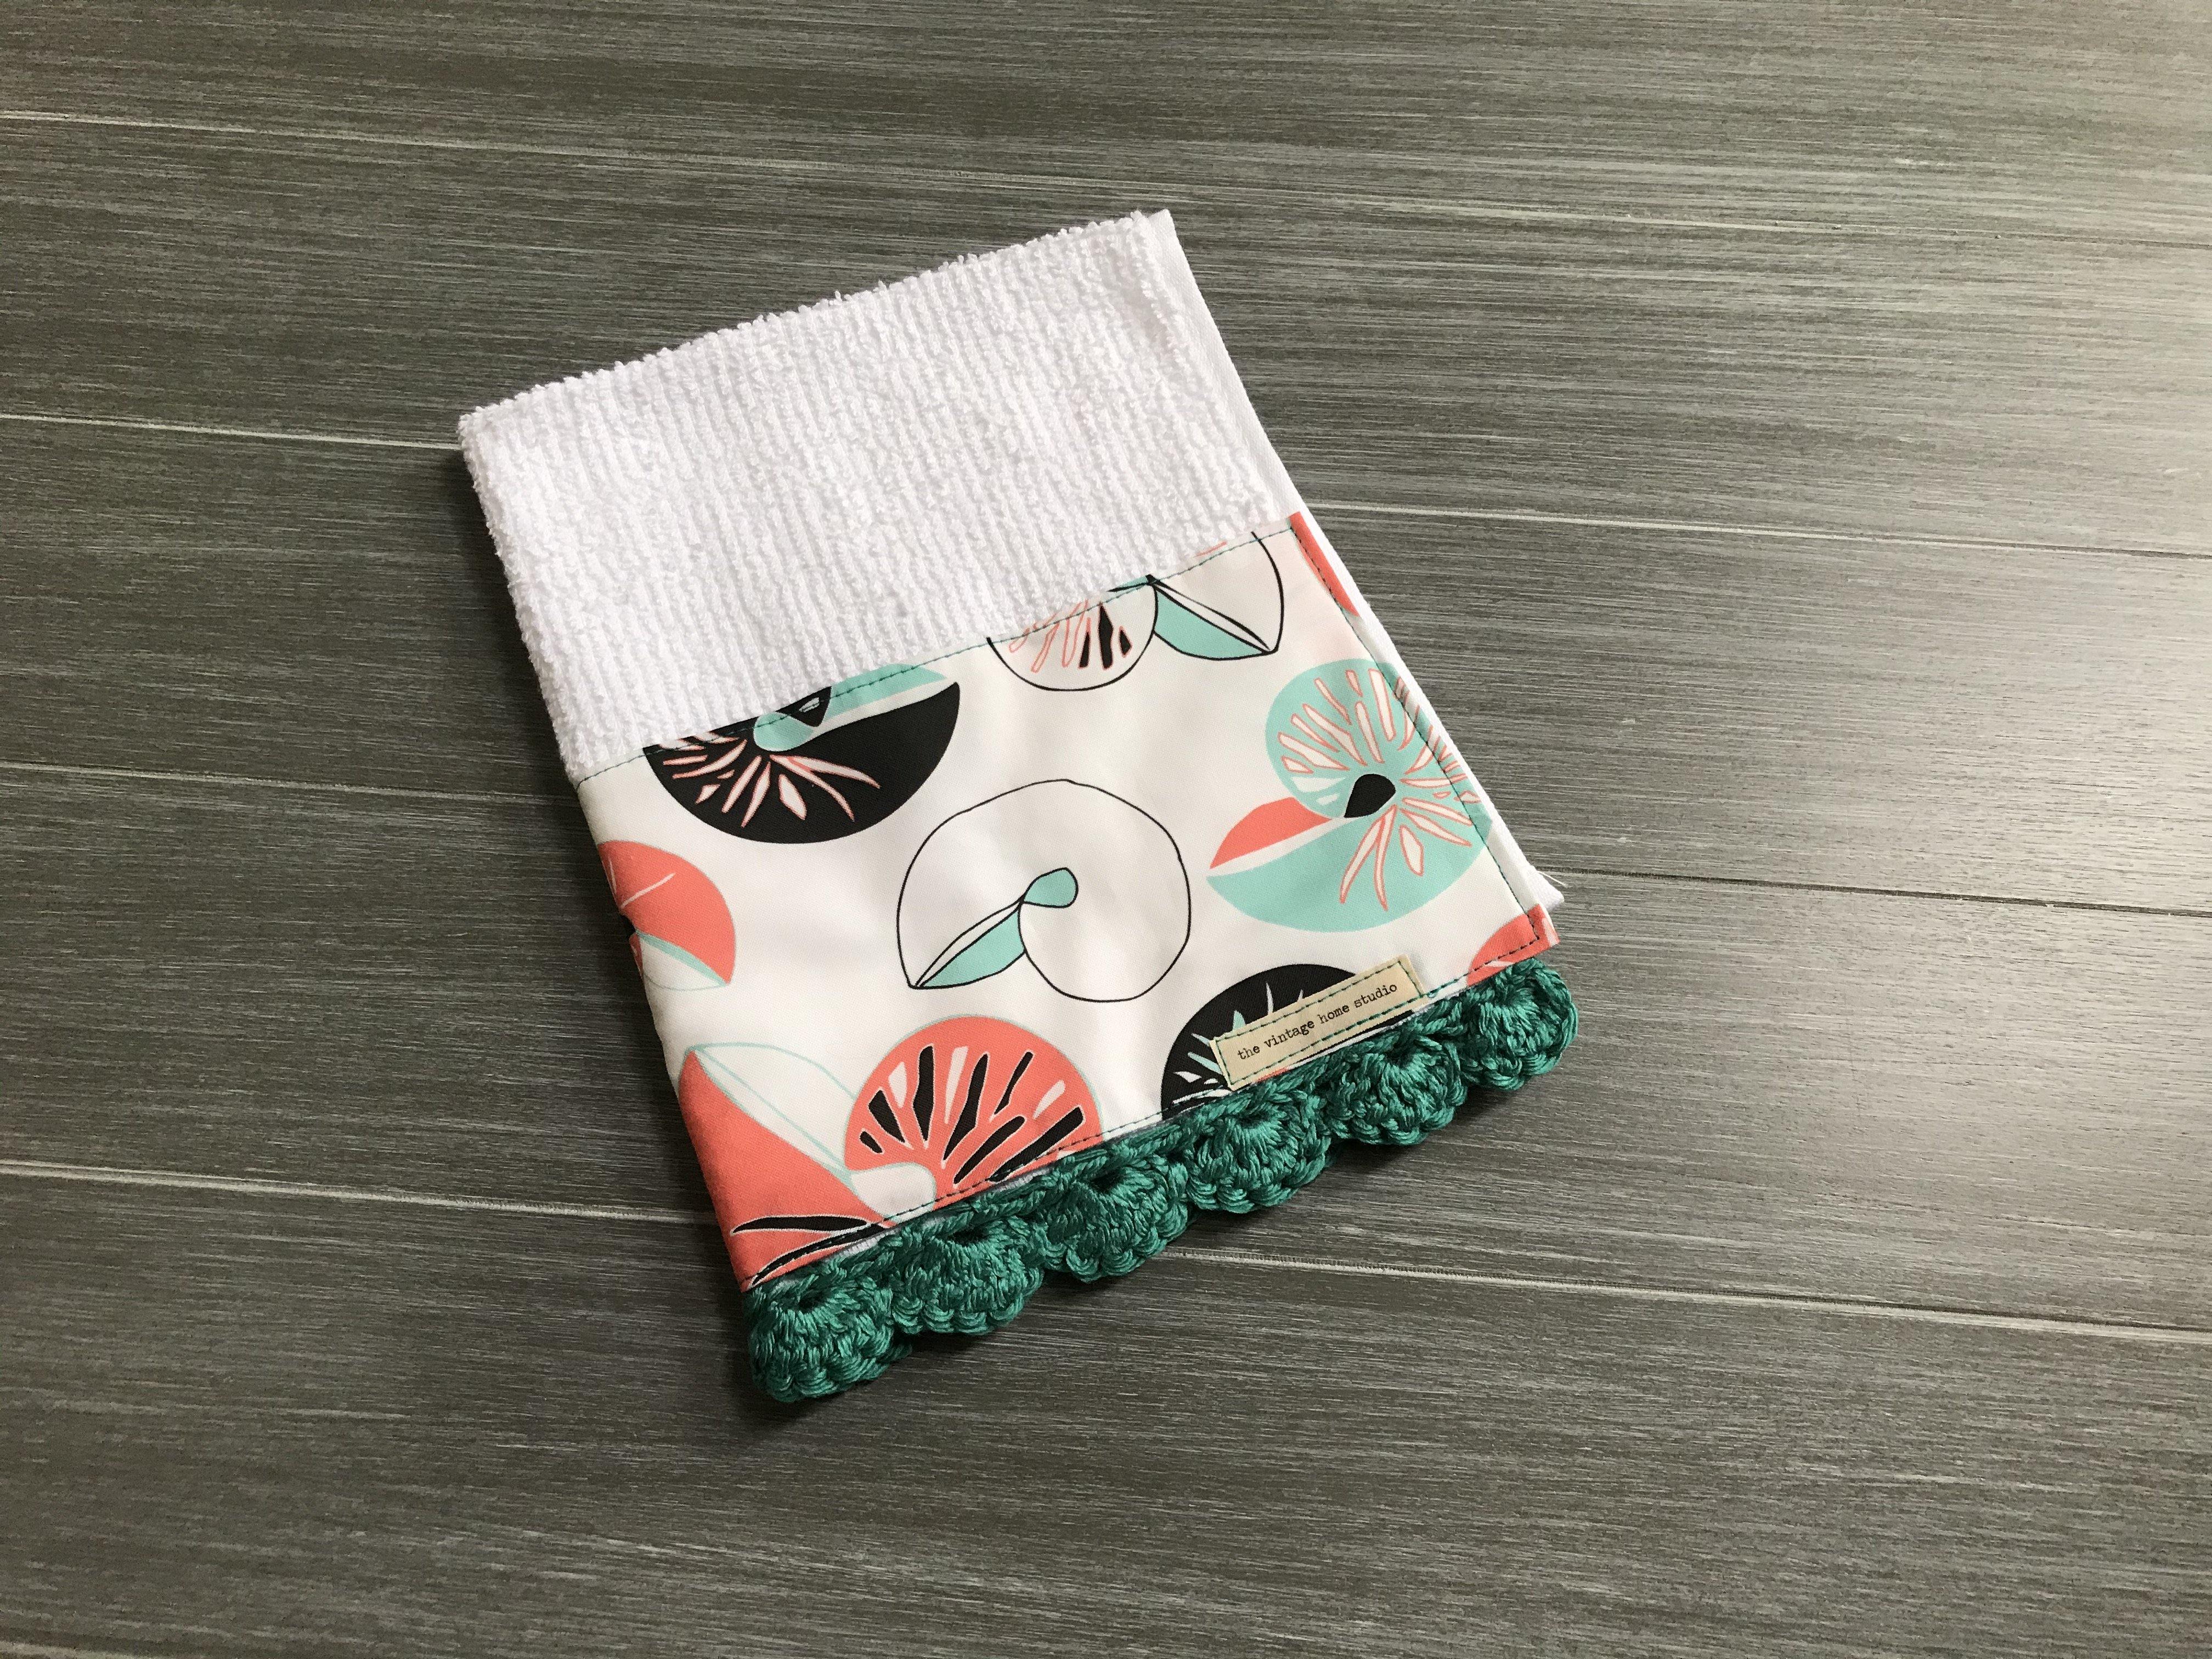 Sea Shells Crochet Kitchen Bar Mop Towel